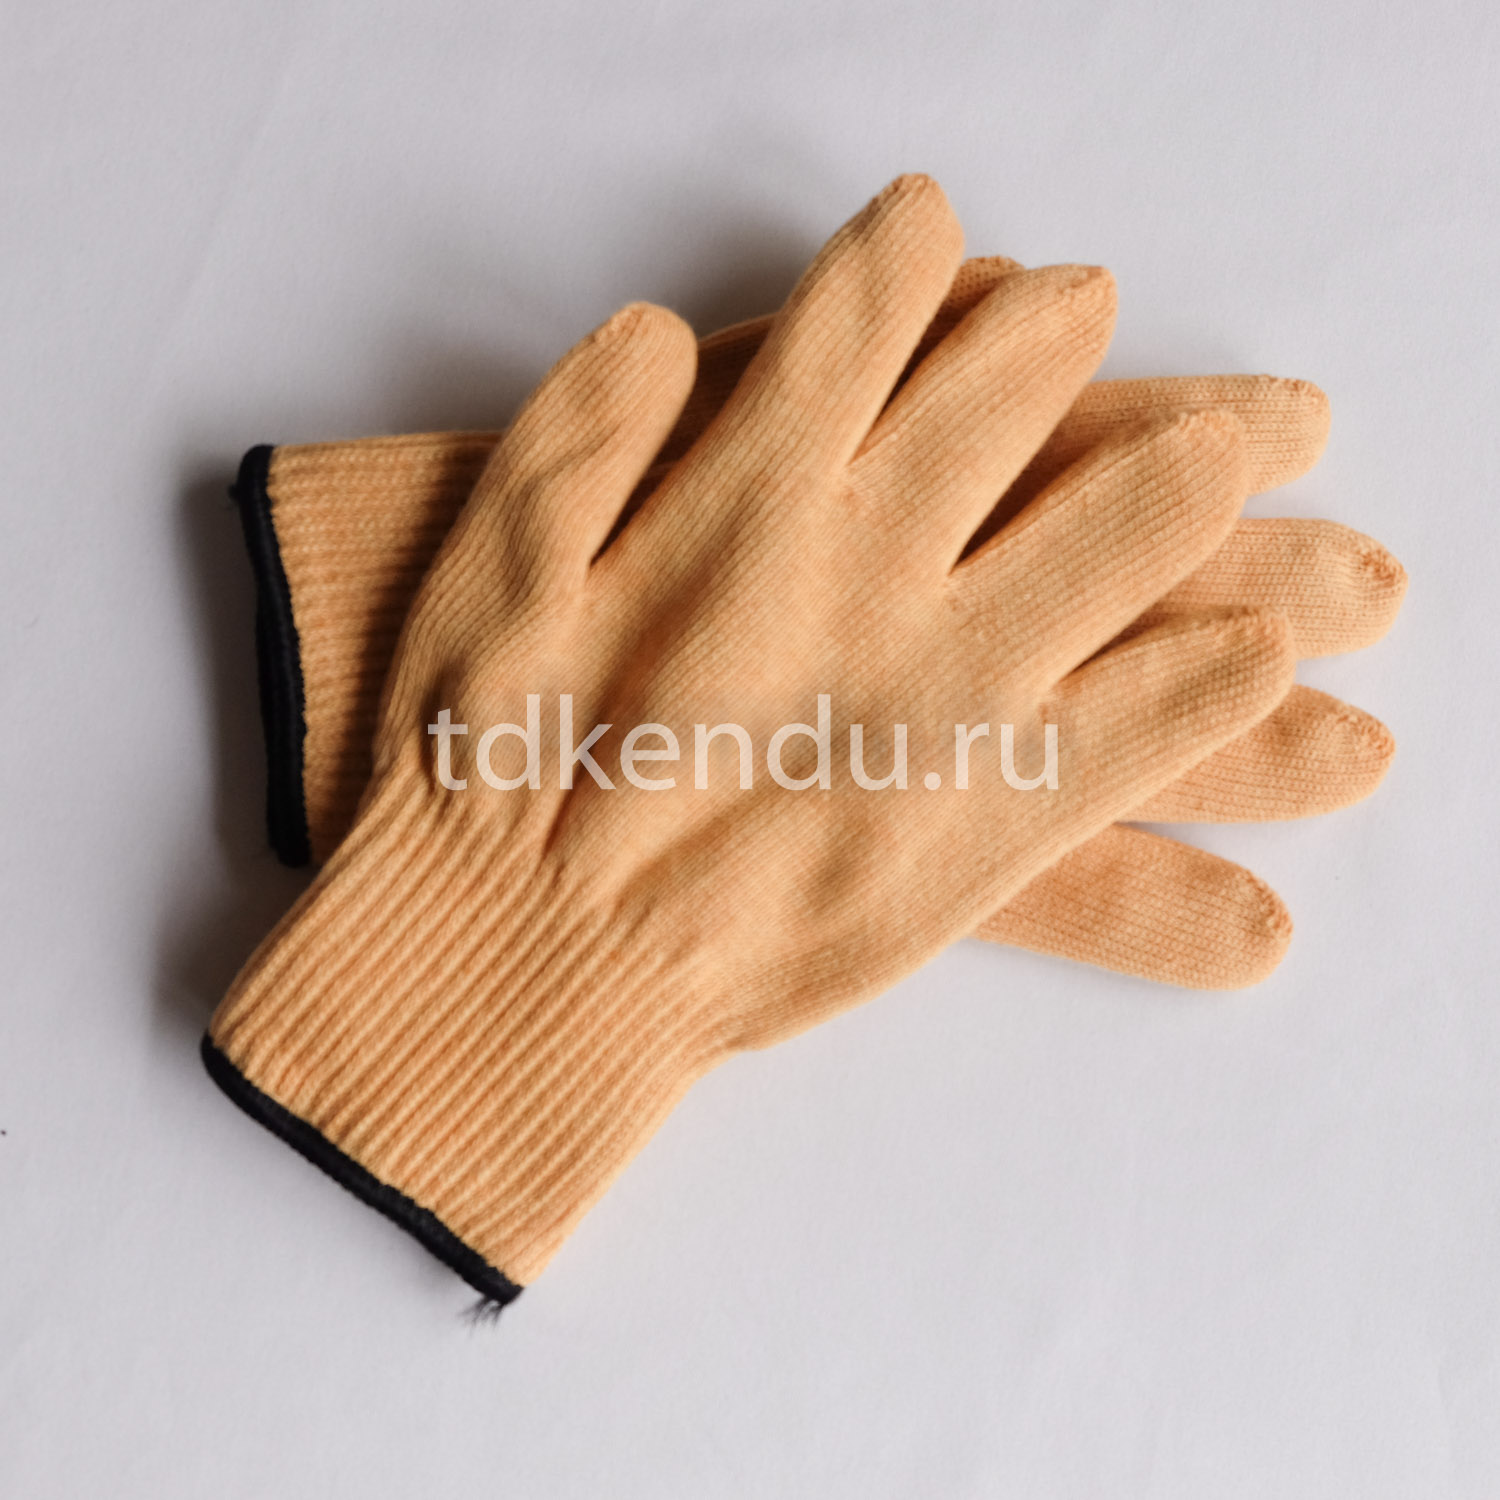 Термостойкие перчатки из арамидной нити с защитой до 250°С